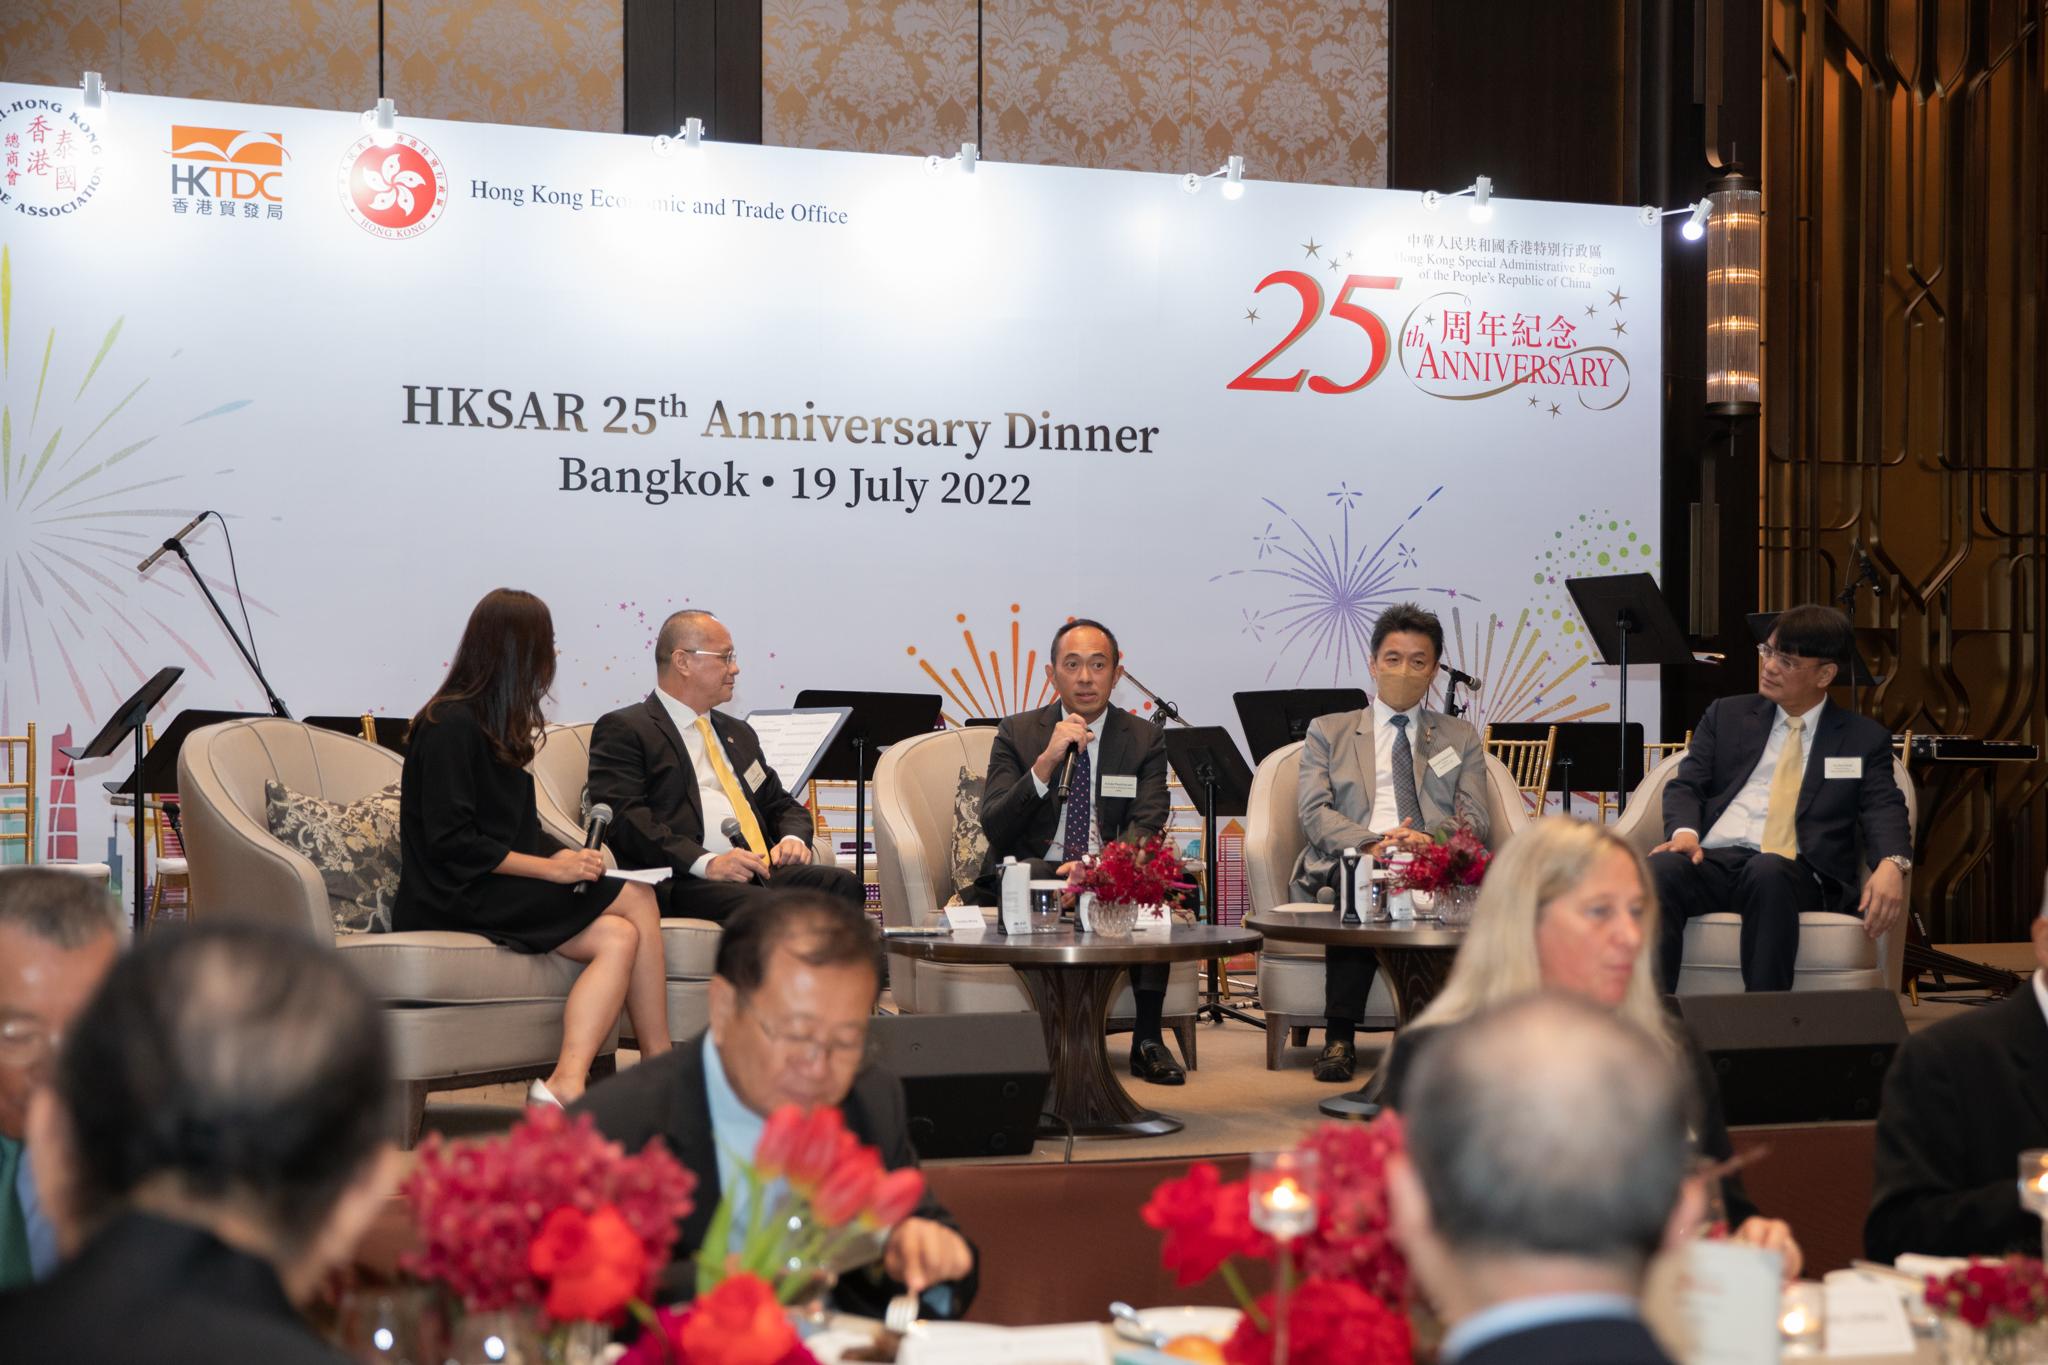 香港駐曼谷經濟貿易辦事處七月十九日在曼谷舉行商務晚宴，慶祝香港特別行政區成立二十五周年。晚宴包括專題討論環節，多位來自泰國不同行業並與香港有聯繫的商界領袖，圍繞「二十五年與未來：泰國與香港的機遇」的主題，分享他們對在泰國與香港的營商機遇的看法，並討論兩地具潛力的合作範疇。